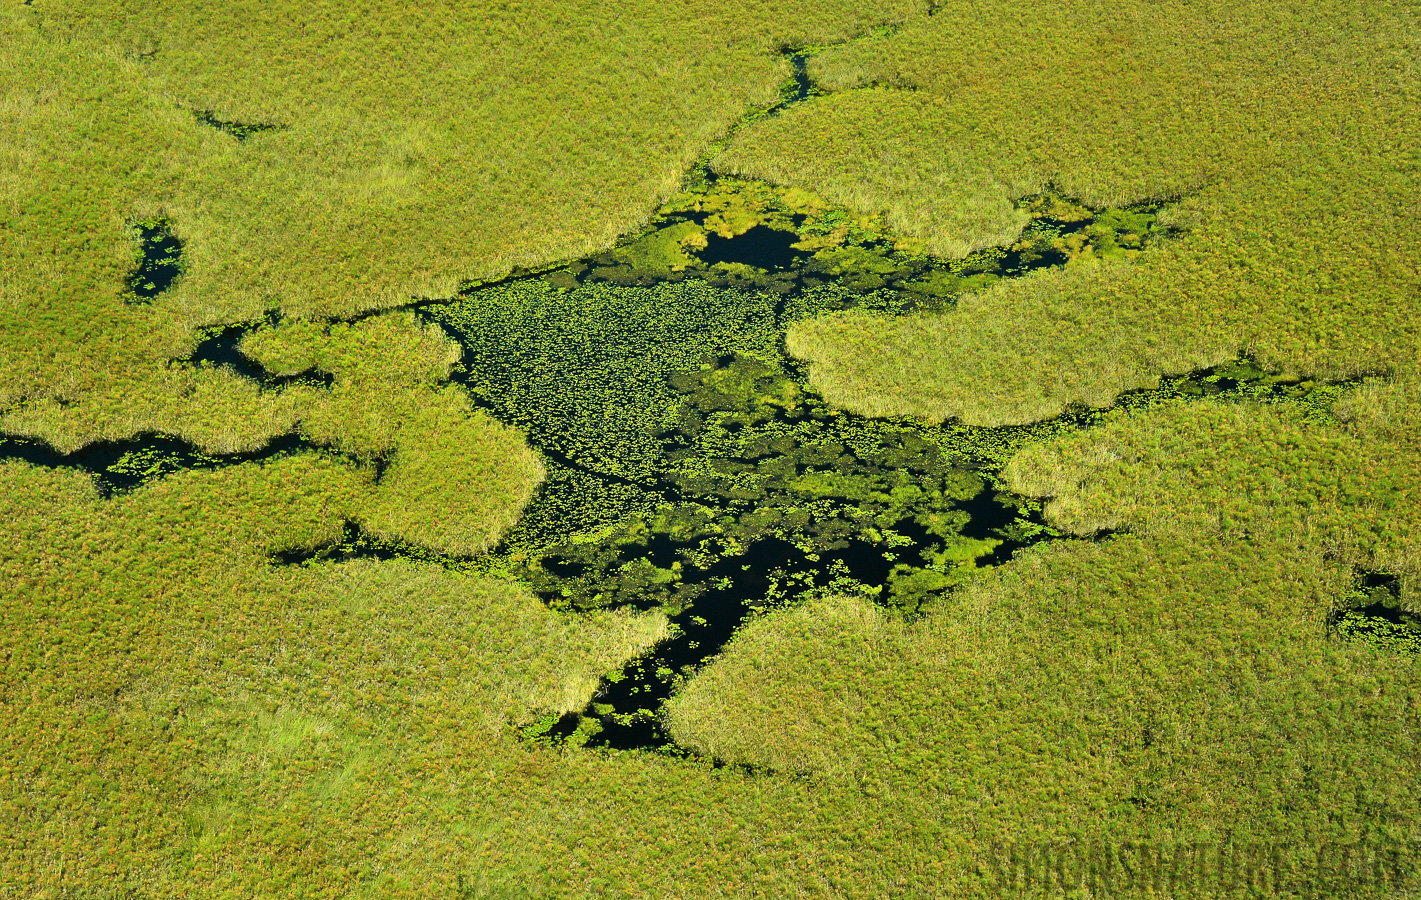 Okavango Delta May 2014 [68 mm, 1/2500 sec at f / 8.0, ISO 2500]